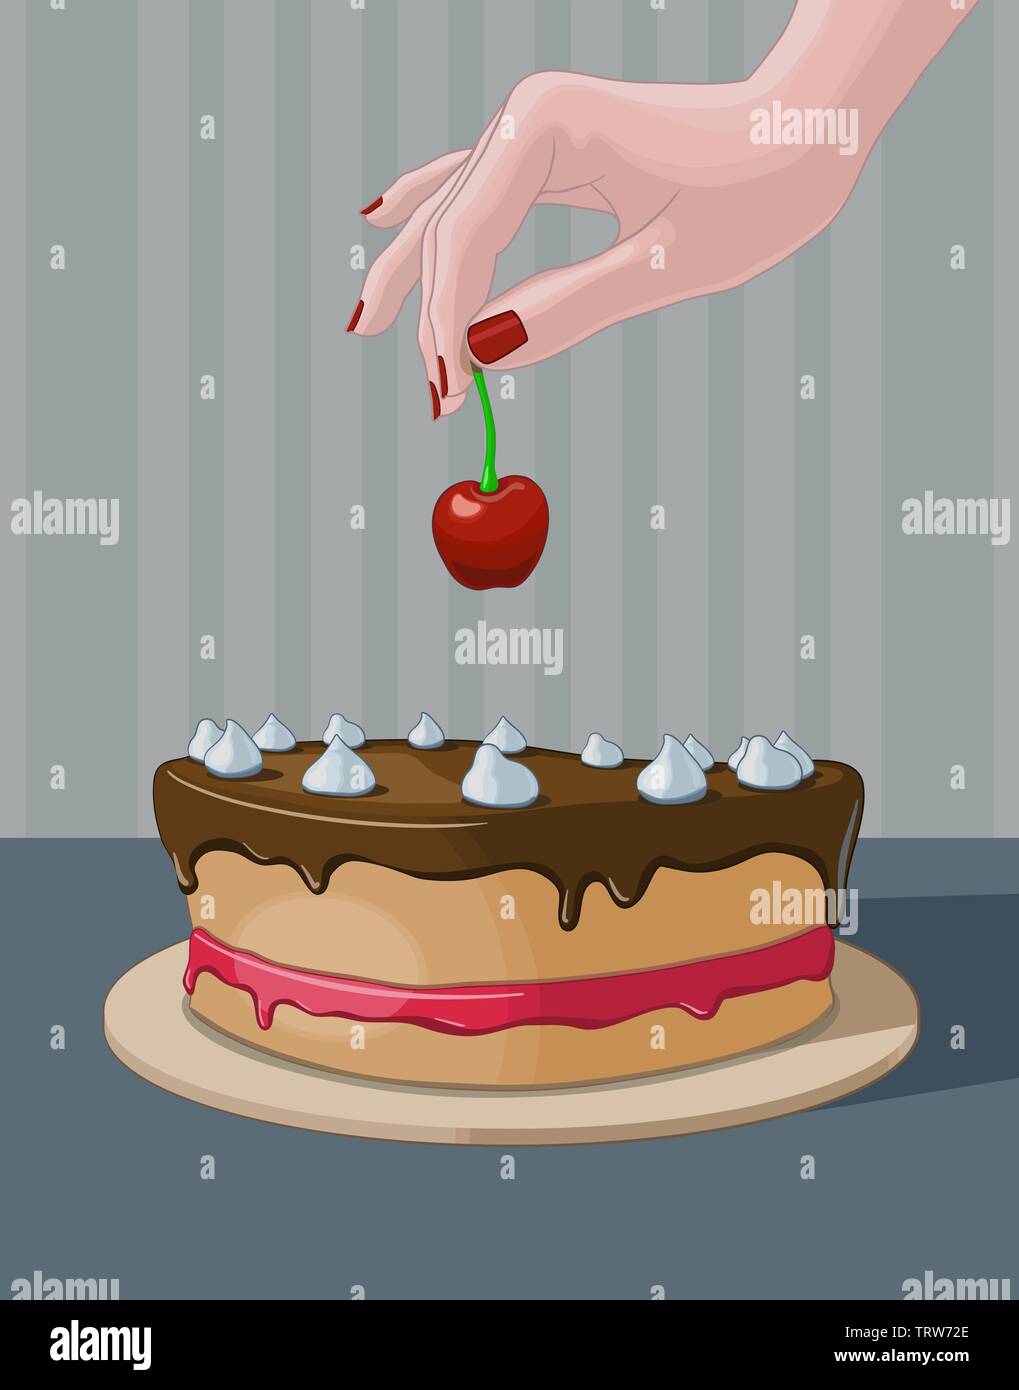 Woman's Hand dekorieren ein Kuchen mit einer Kirsche. Vector Illustration. Stock Vektor